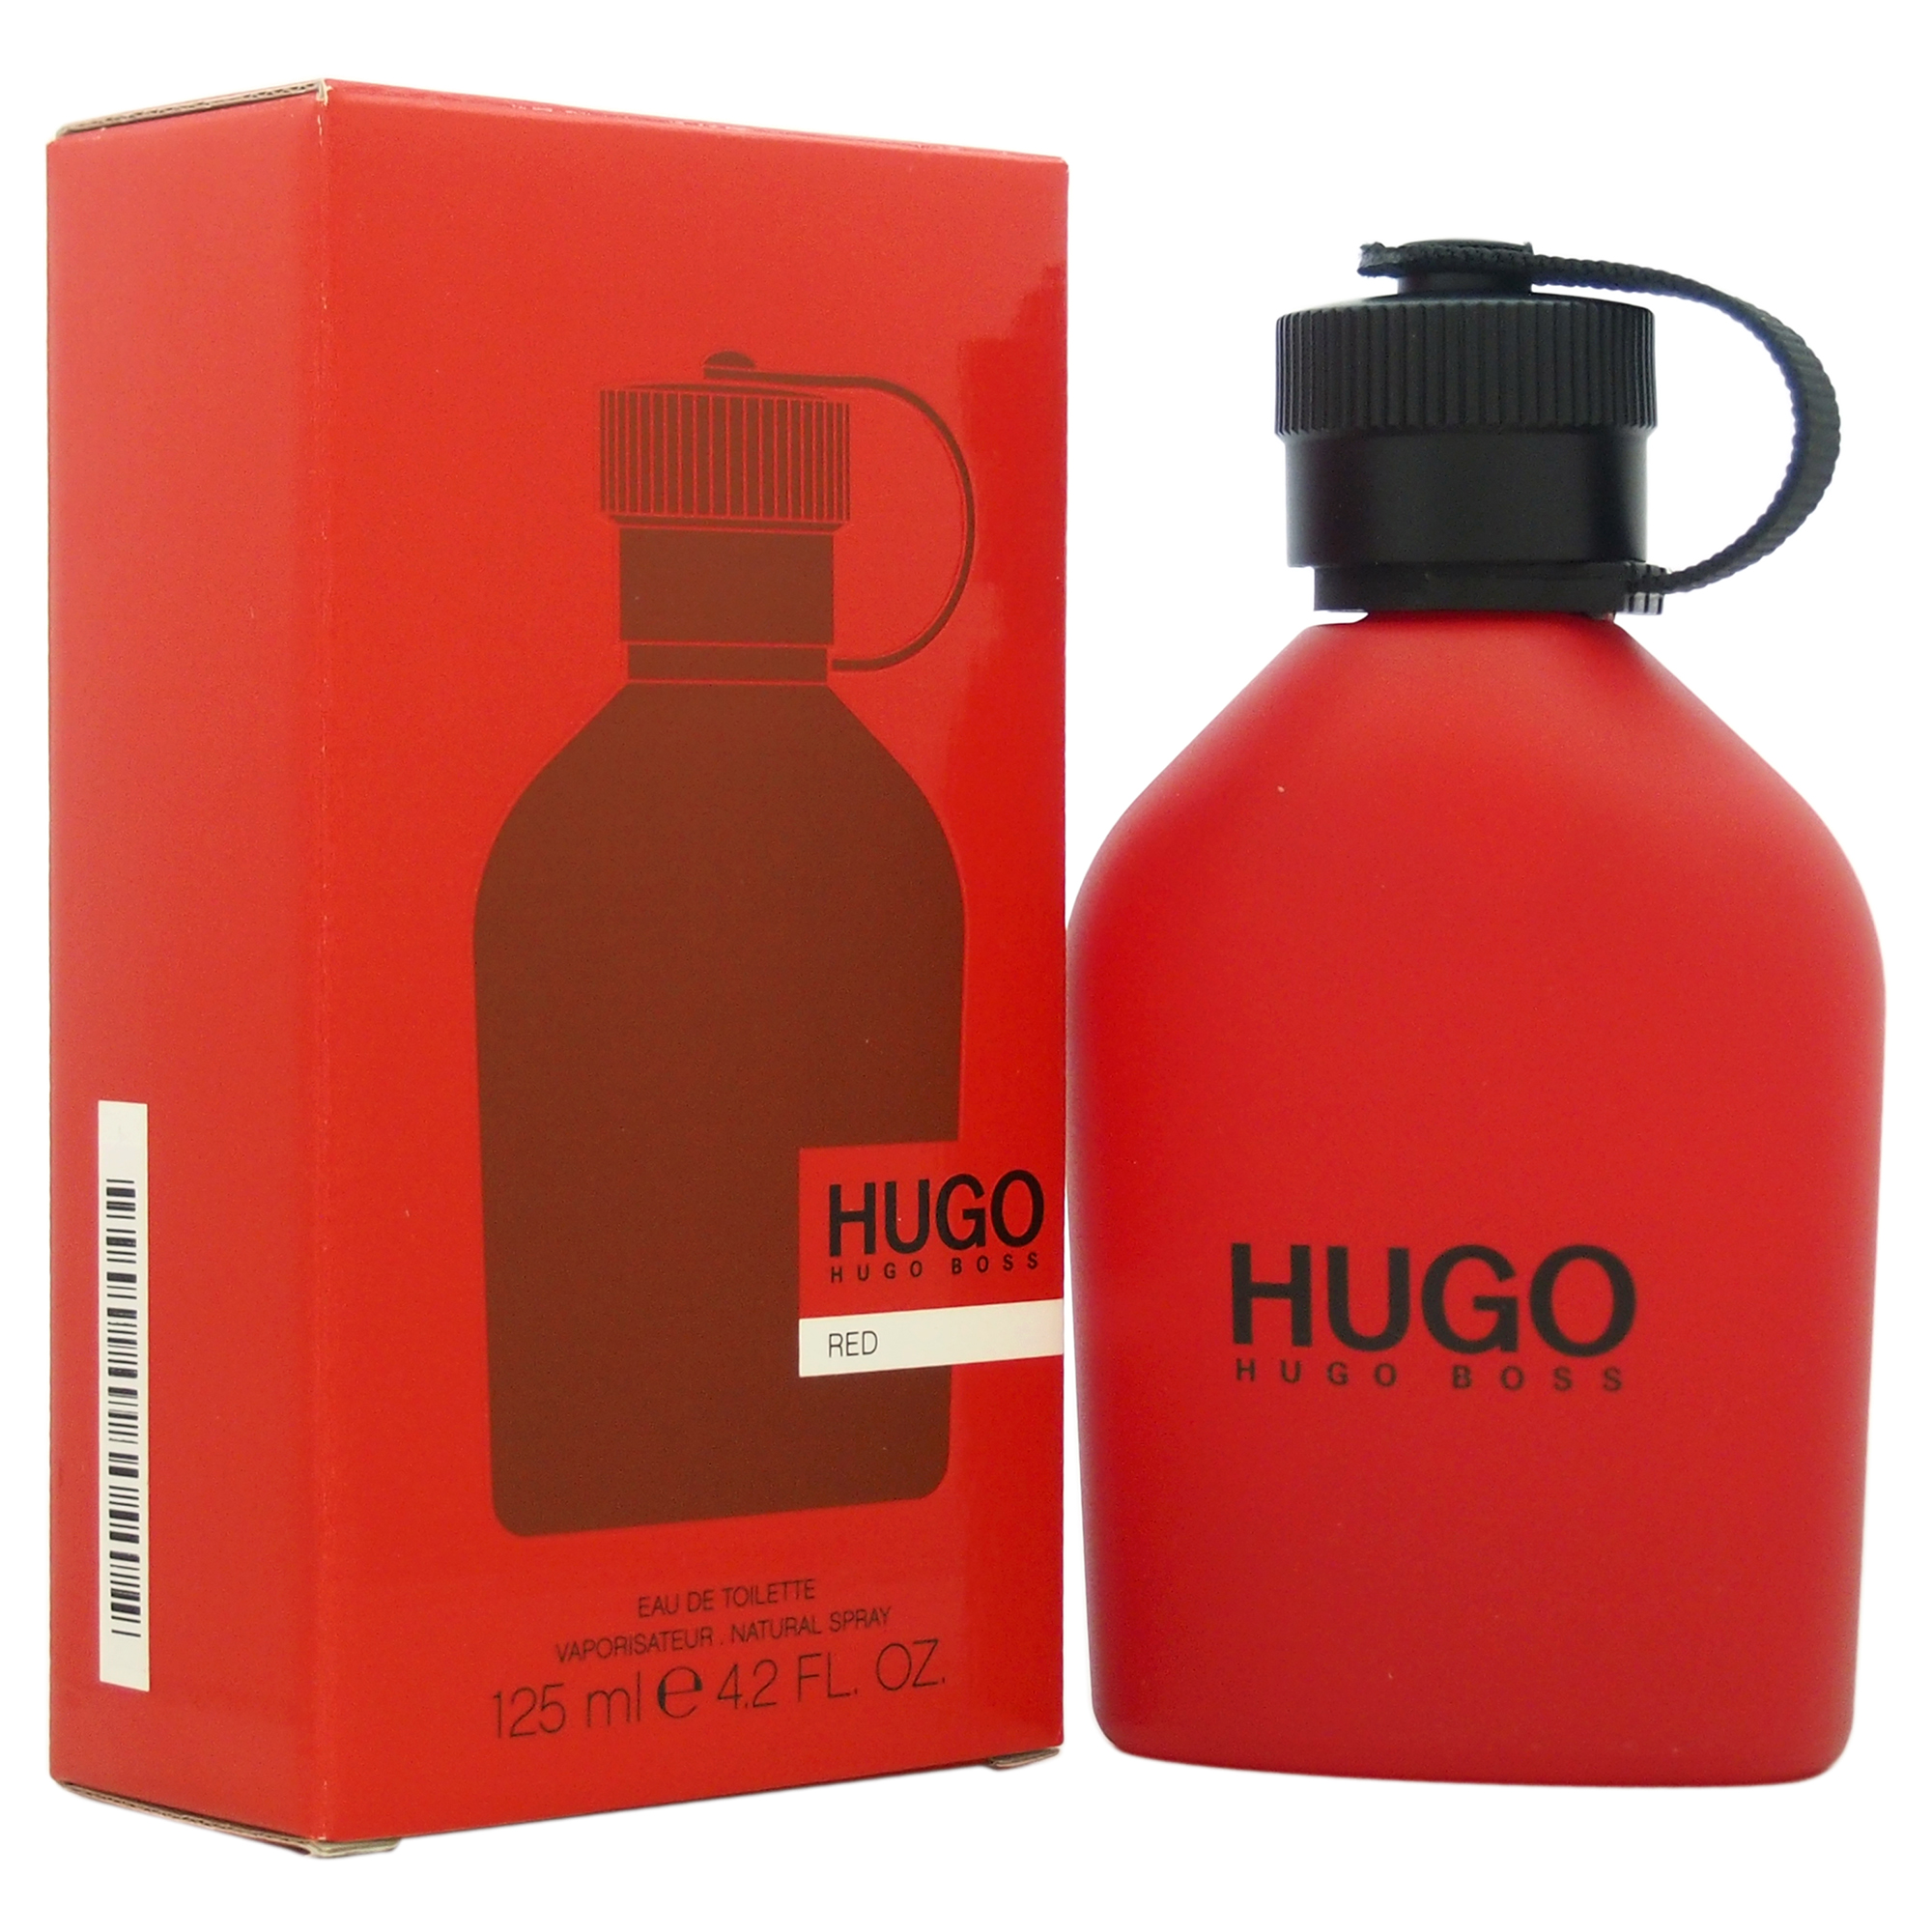 Хьюго босс ред. Hugo Boss Hugo Red. Хуго босс рыжий. Hugo Boss кроссовки мужские красные.